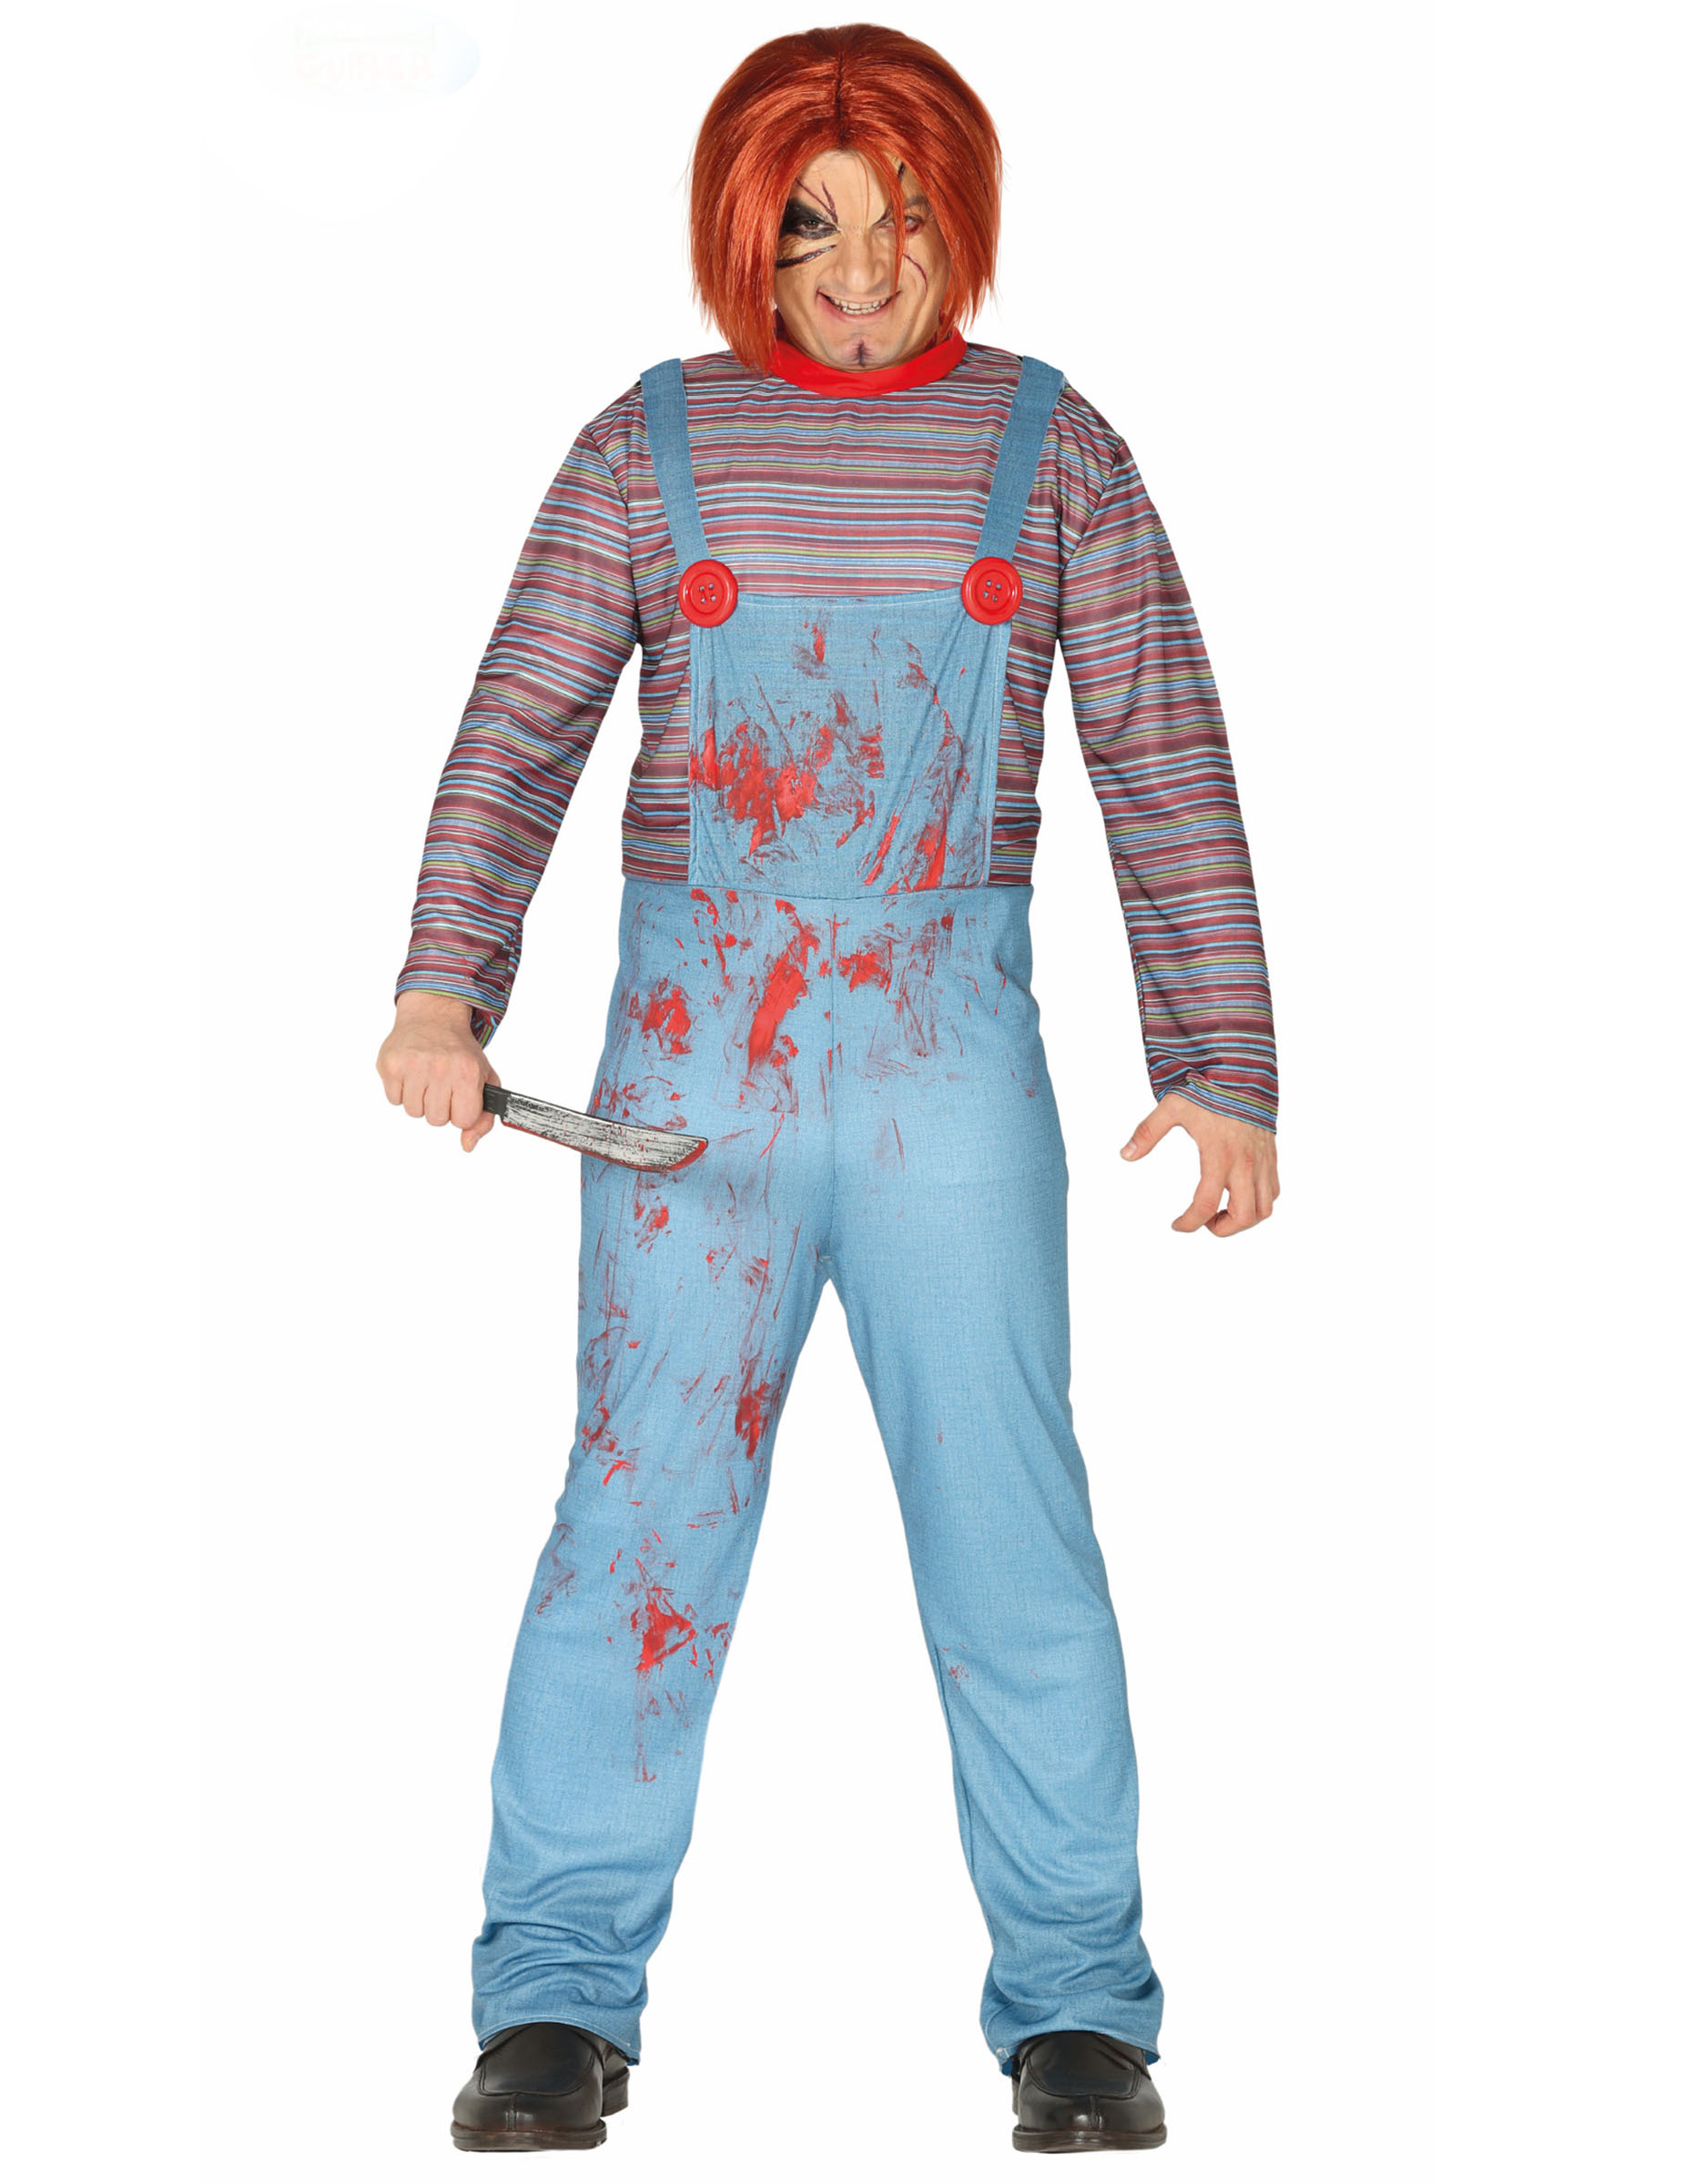 Killerpuppen-Kostüm Horror-Kostüm für Halloween blau-rot von FIESTAS GUIRCA, S.L.